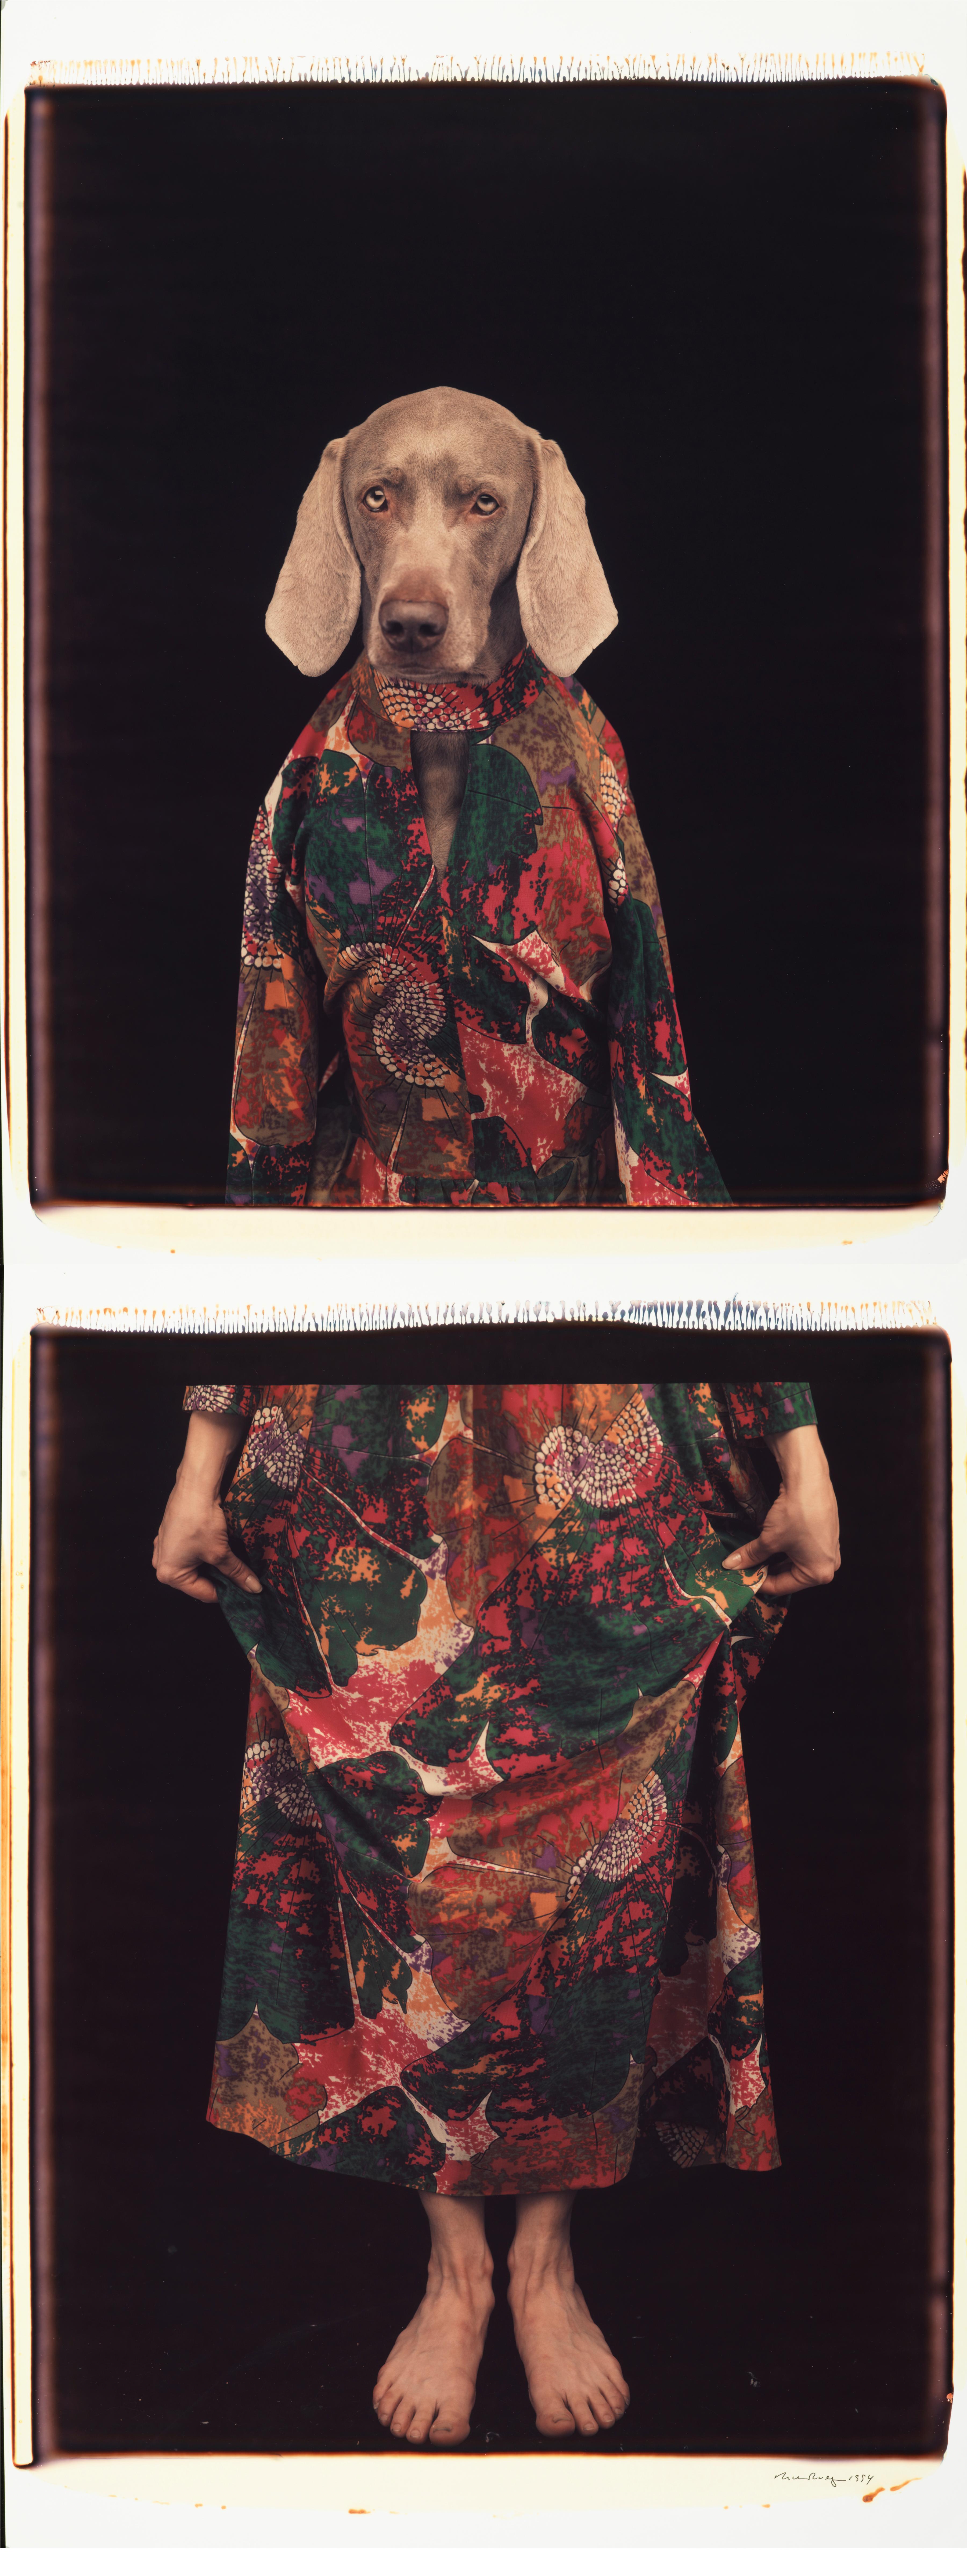 Habillé d'en bas - William Wegman (Photographie en couleur)
Signé et inscrit avec le titre
Deux tirages Polaroid couleur uniques, imprimés en 1994
24 x 20 pouces chacun

Les chiens, perruqués et parés de tenues et d'accessoires, présentent un large